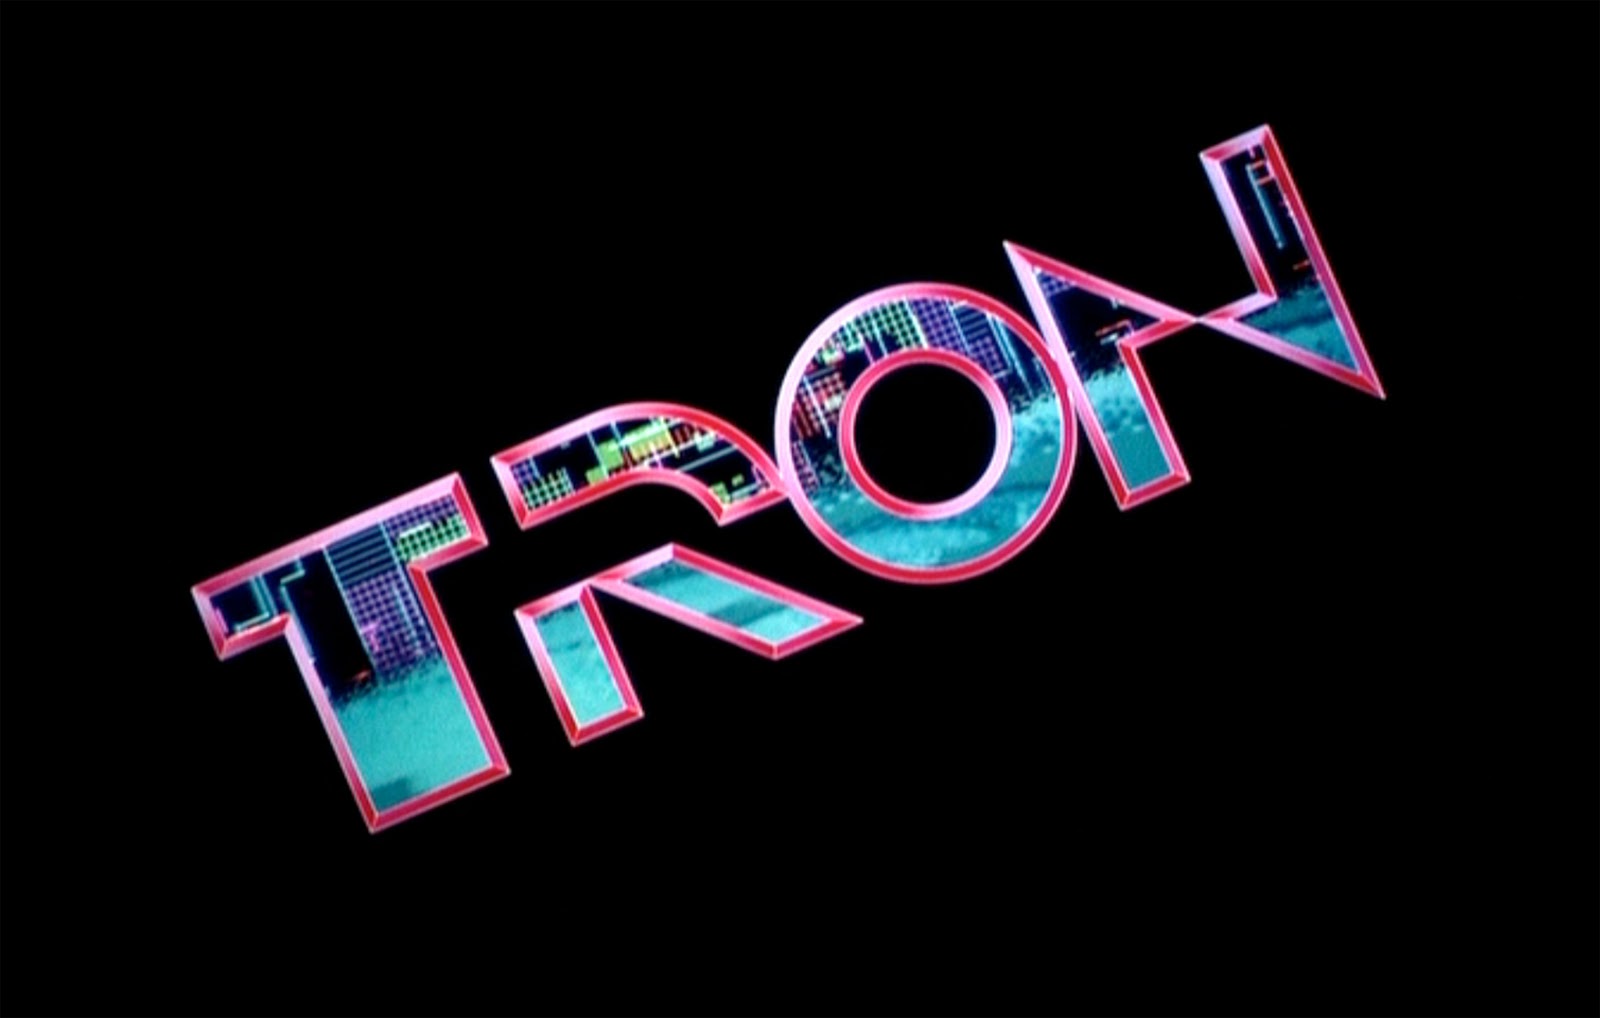 Téléchargez gratuitement l'image Tron, Film sur le bureau de votre PC